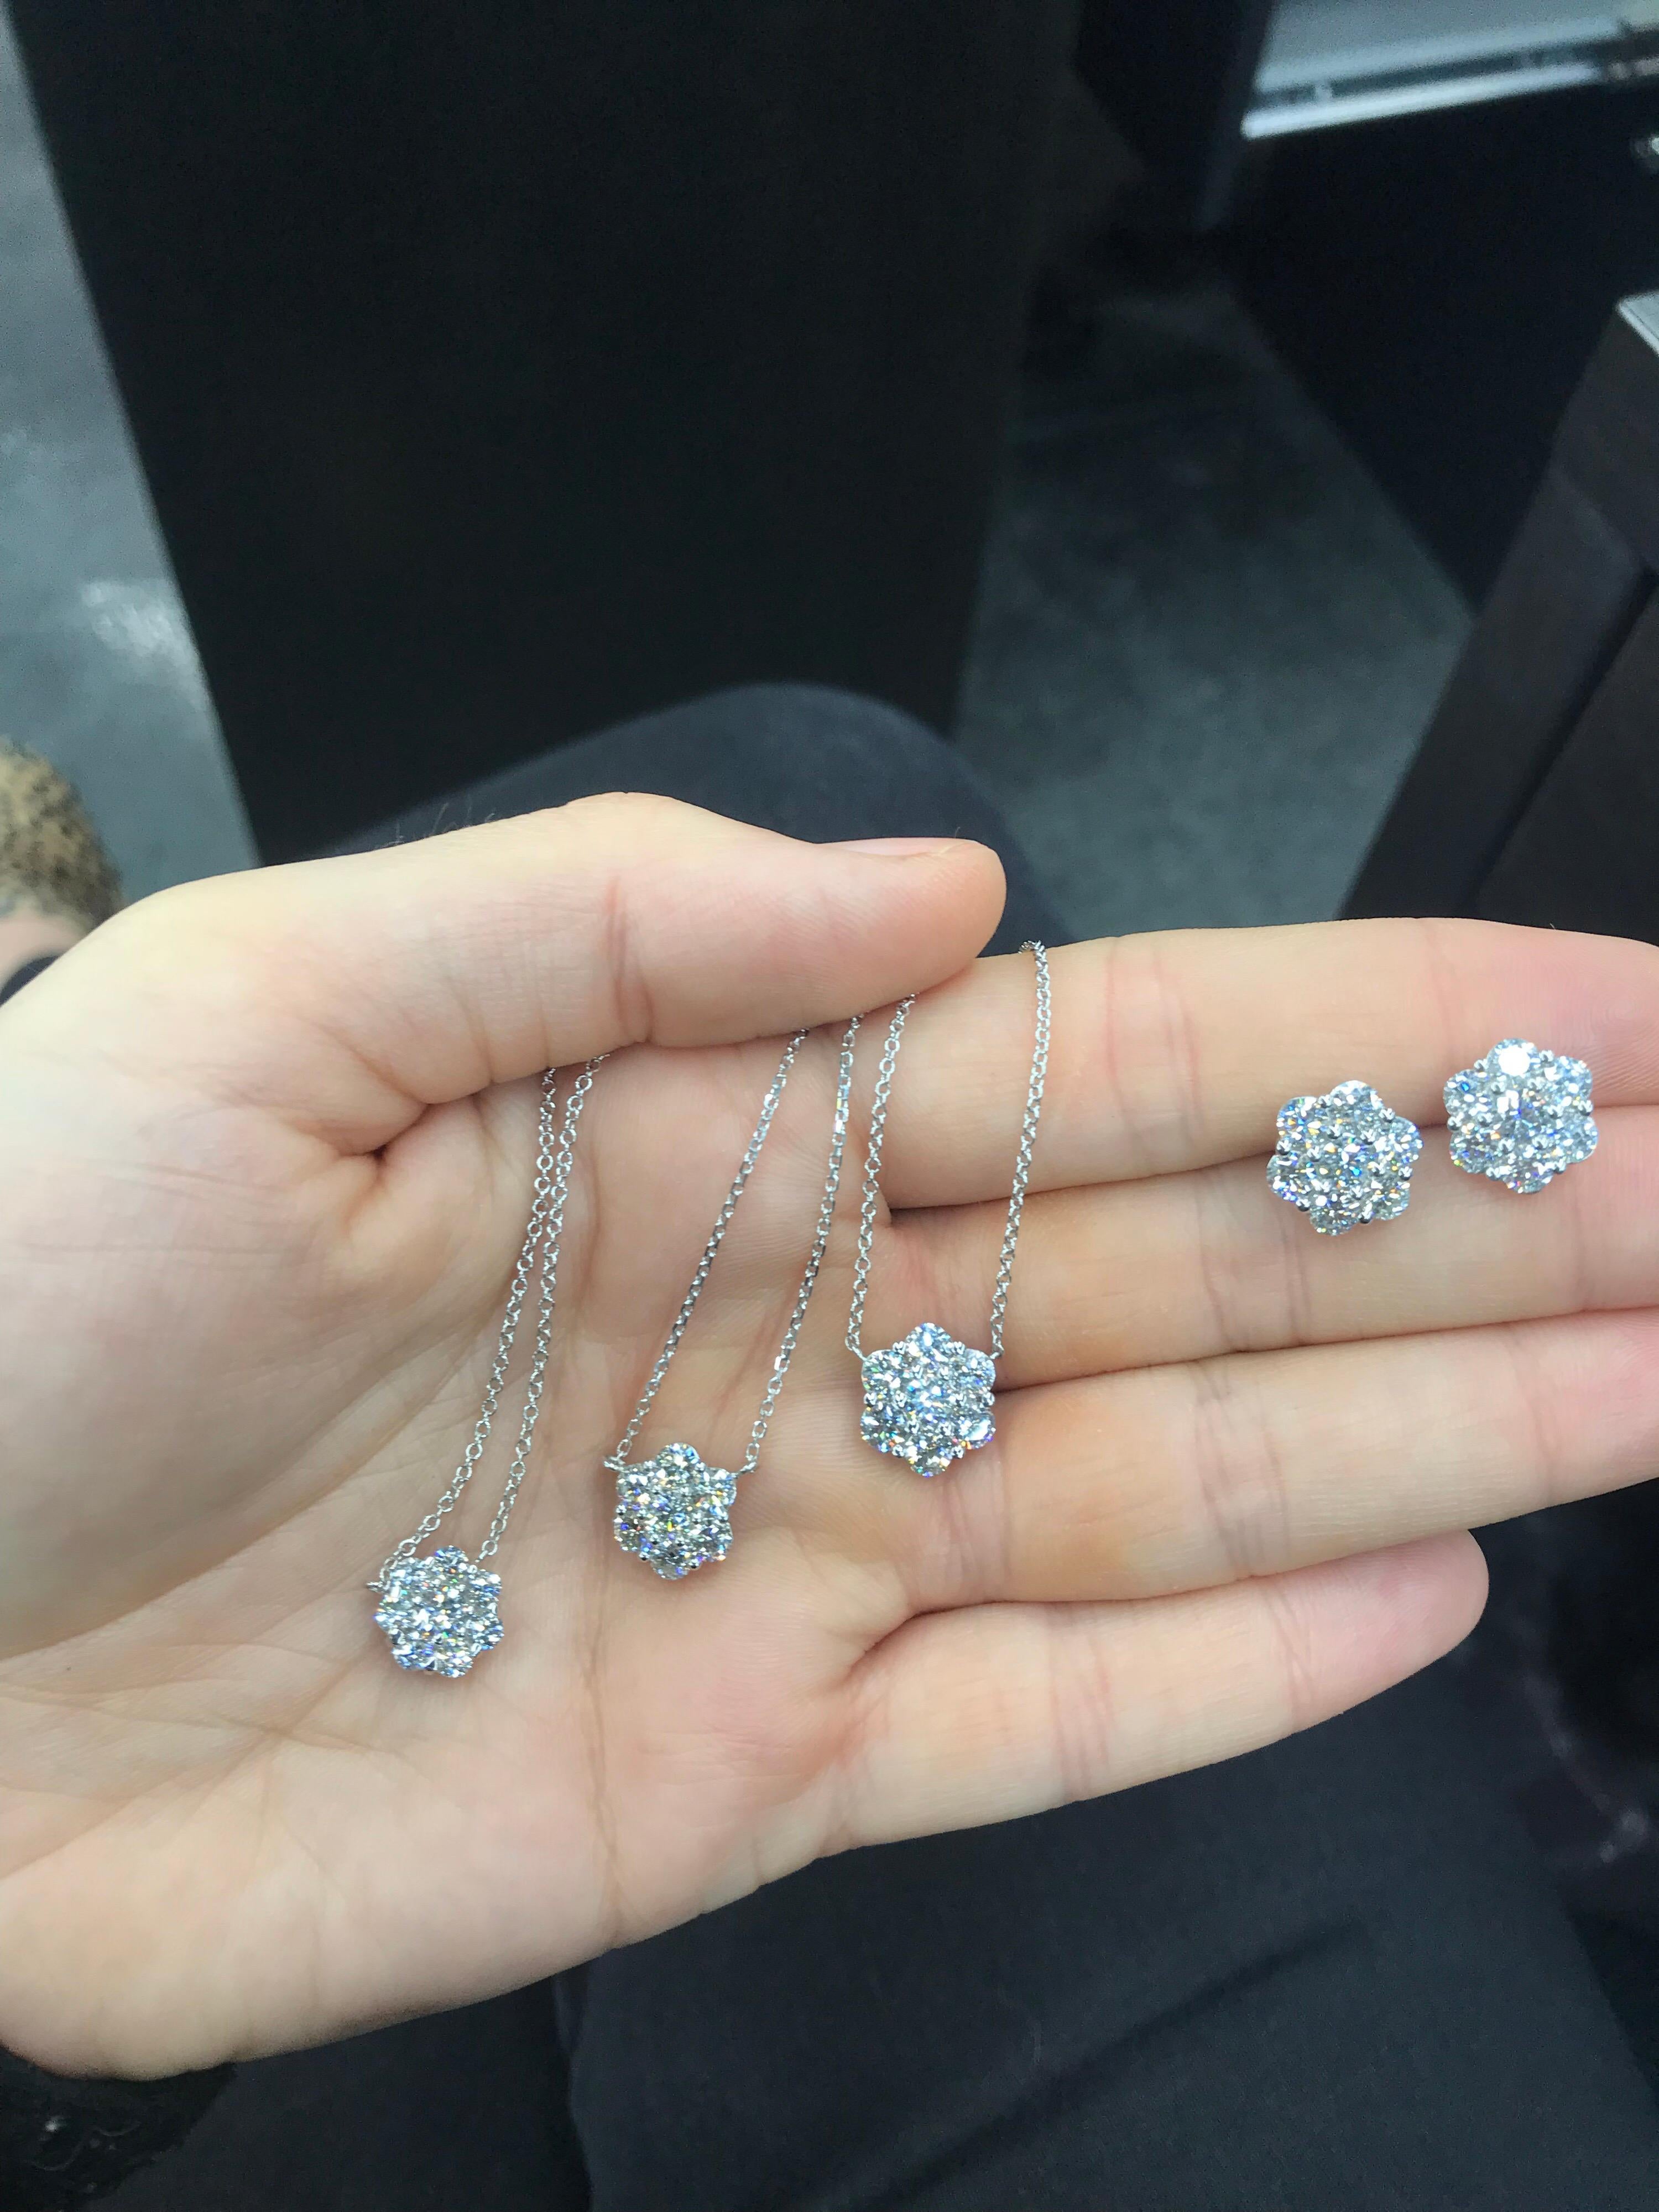 Women's Diamond Cluster Floral Pendant Necklace 1.33 Carat 18 Karat White Gold